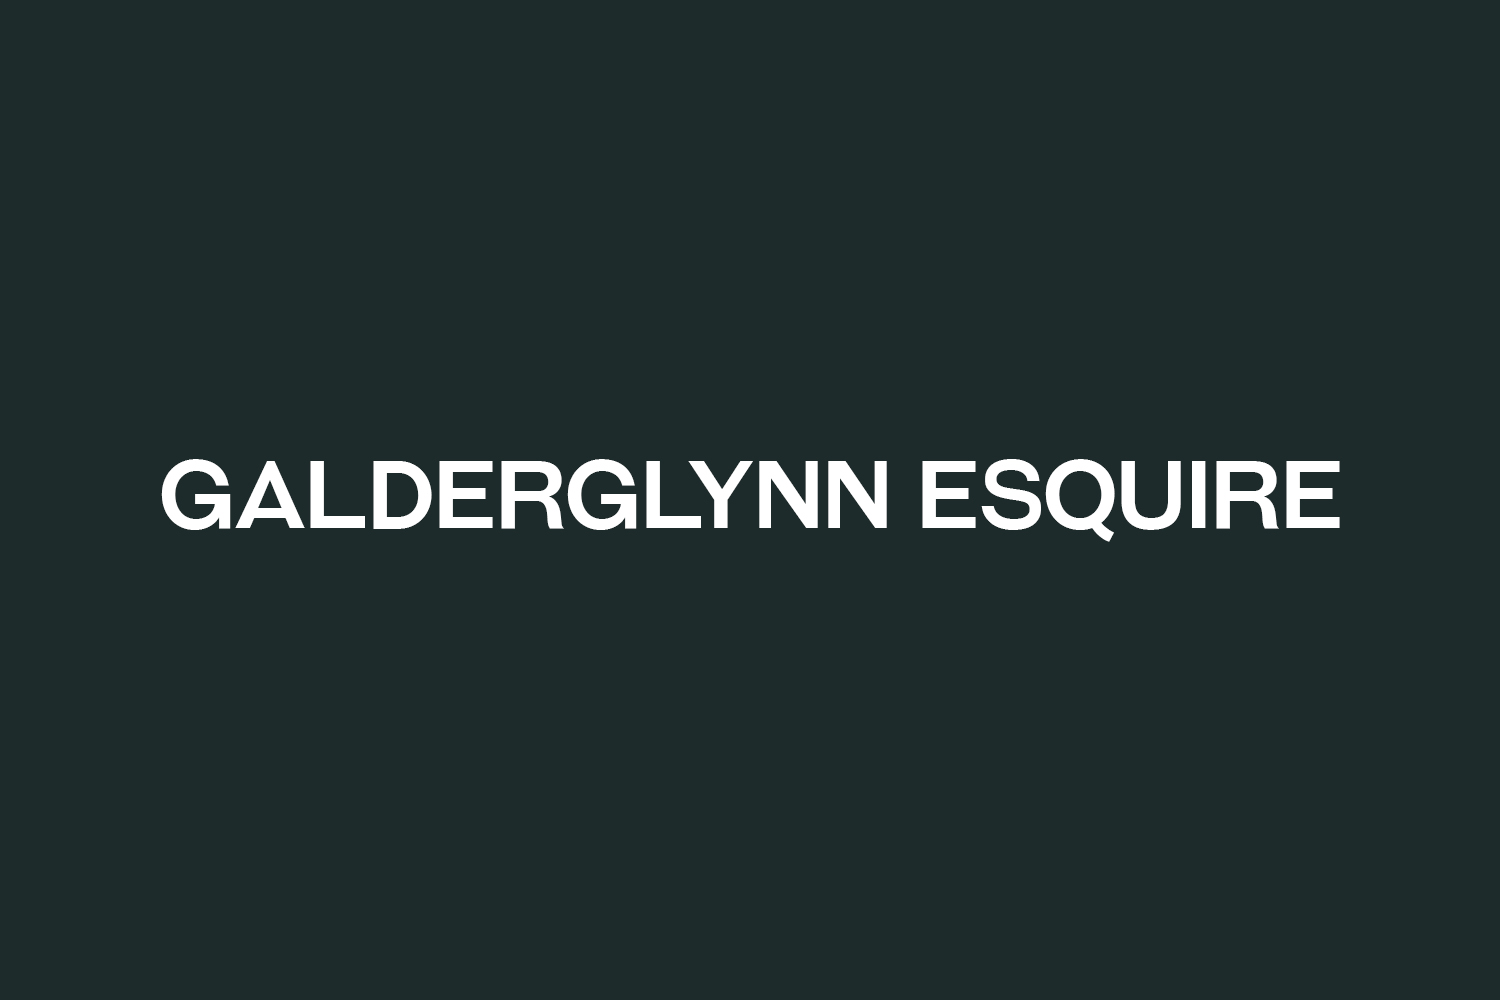 Galderglynn Esquire Free Font